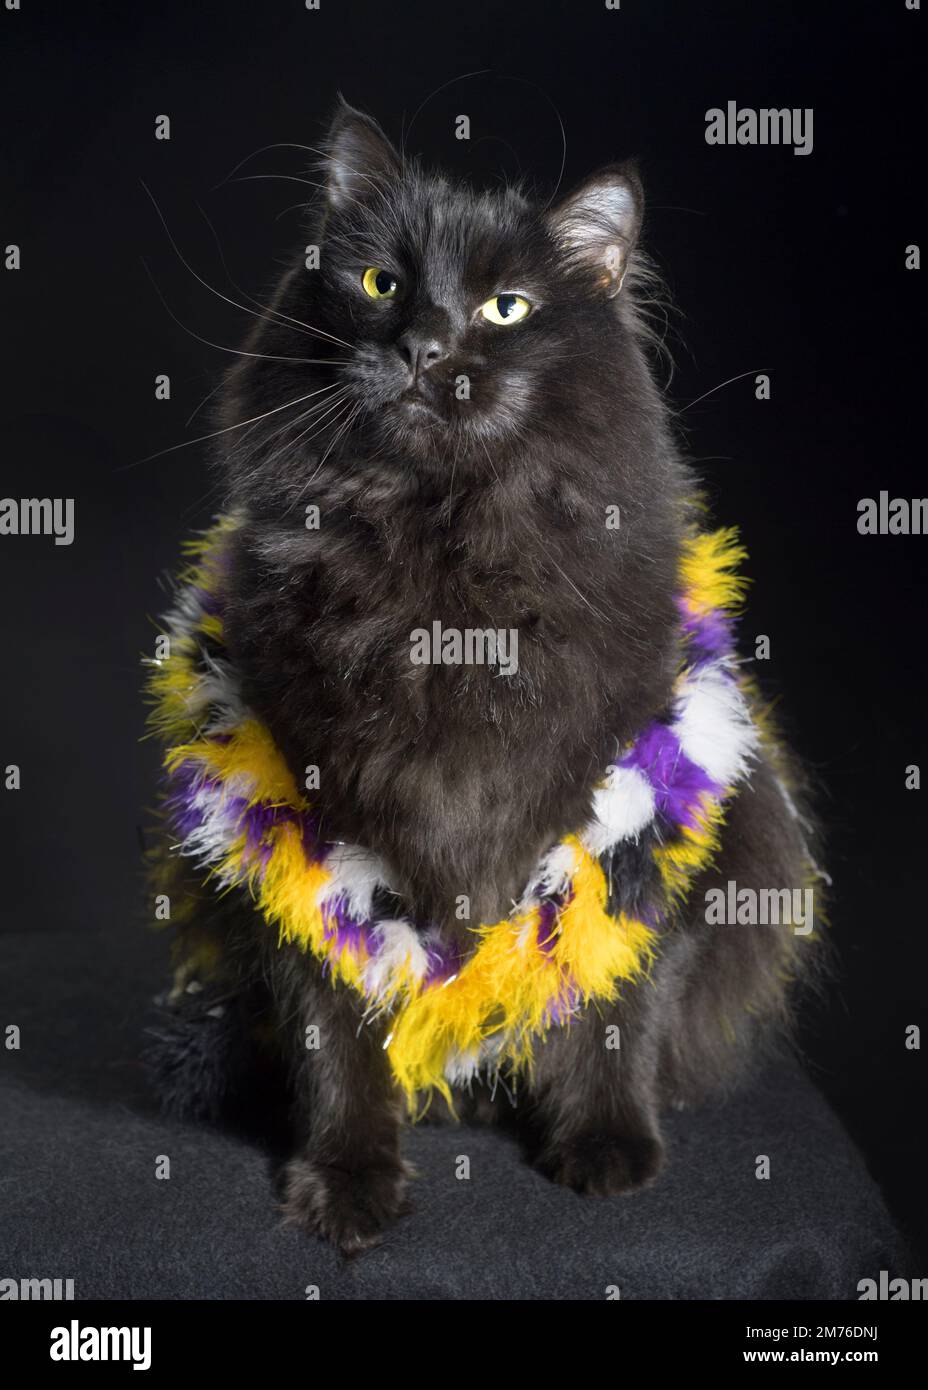 Bel gatto nero a capelli lunghi che indossa i colori della bandiera non binaria: Giallo, viola, nero e bianco. Foto Stock